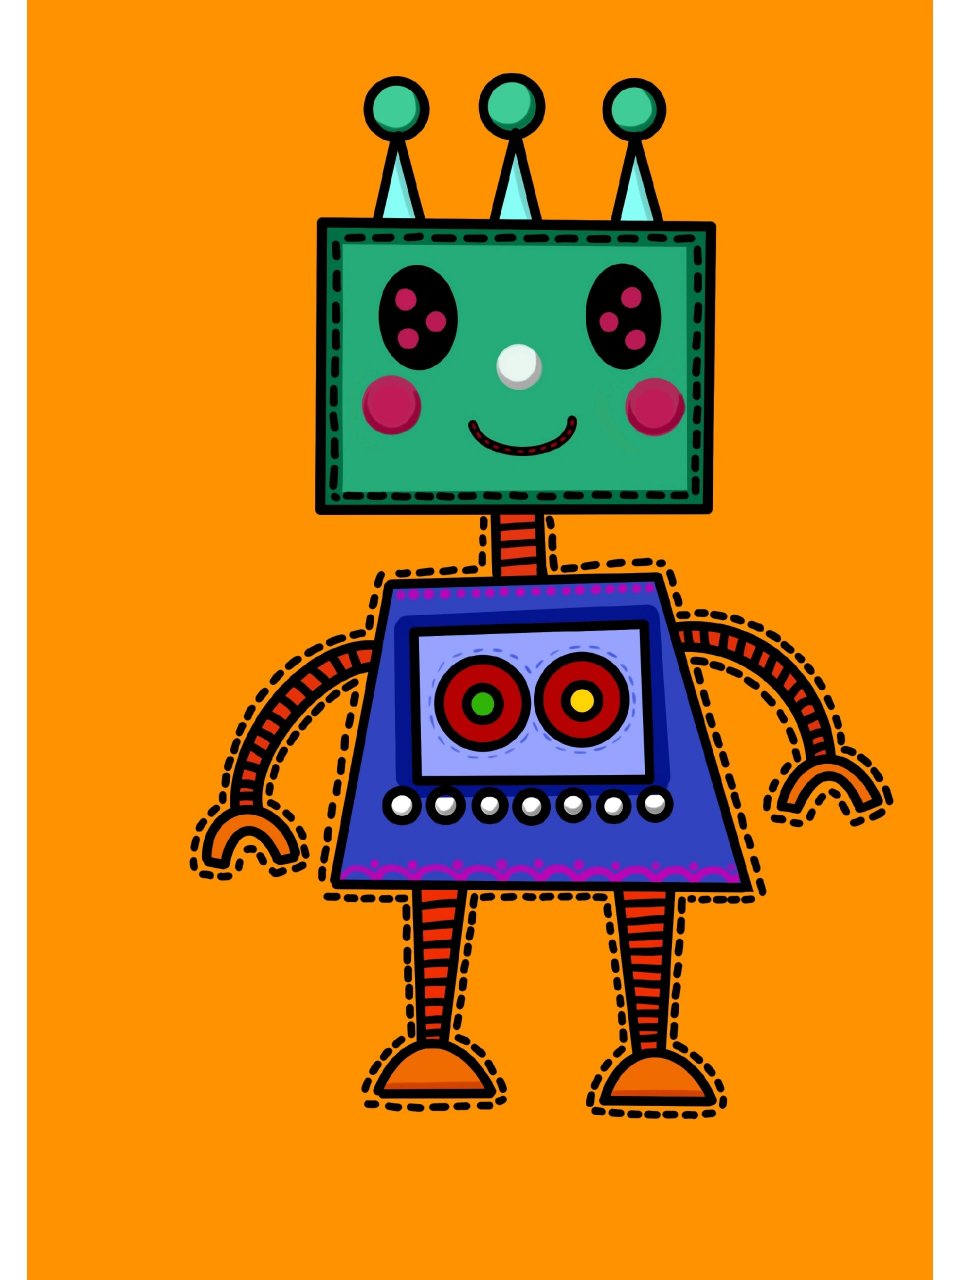 儿童画/《机器人》/儿童创意美术 画种:儿童画 年龄:5~8岁儿童 材料